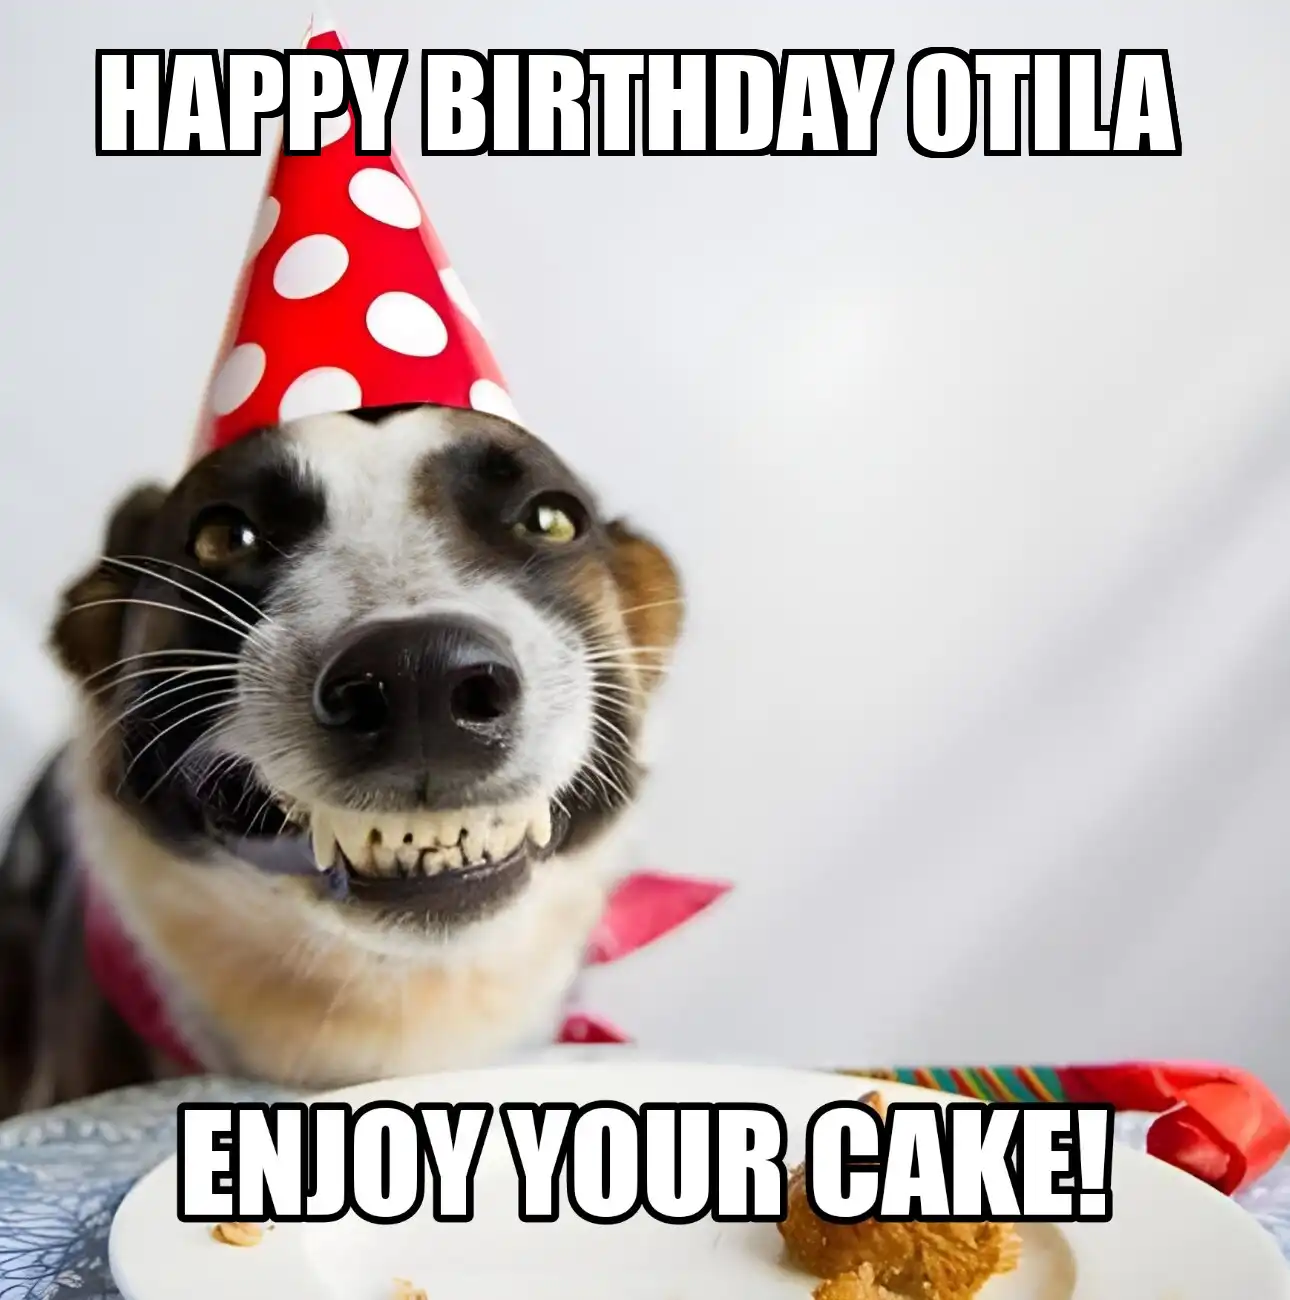 Happy Birthday Otila Enjoy Your Cake Dog Meme